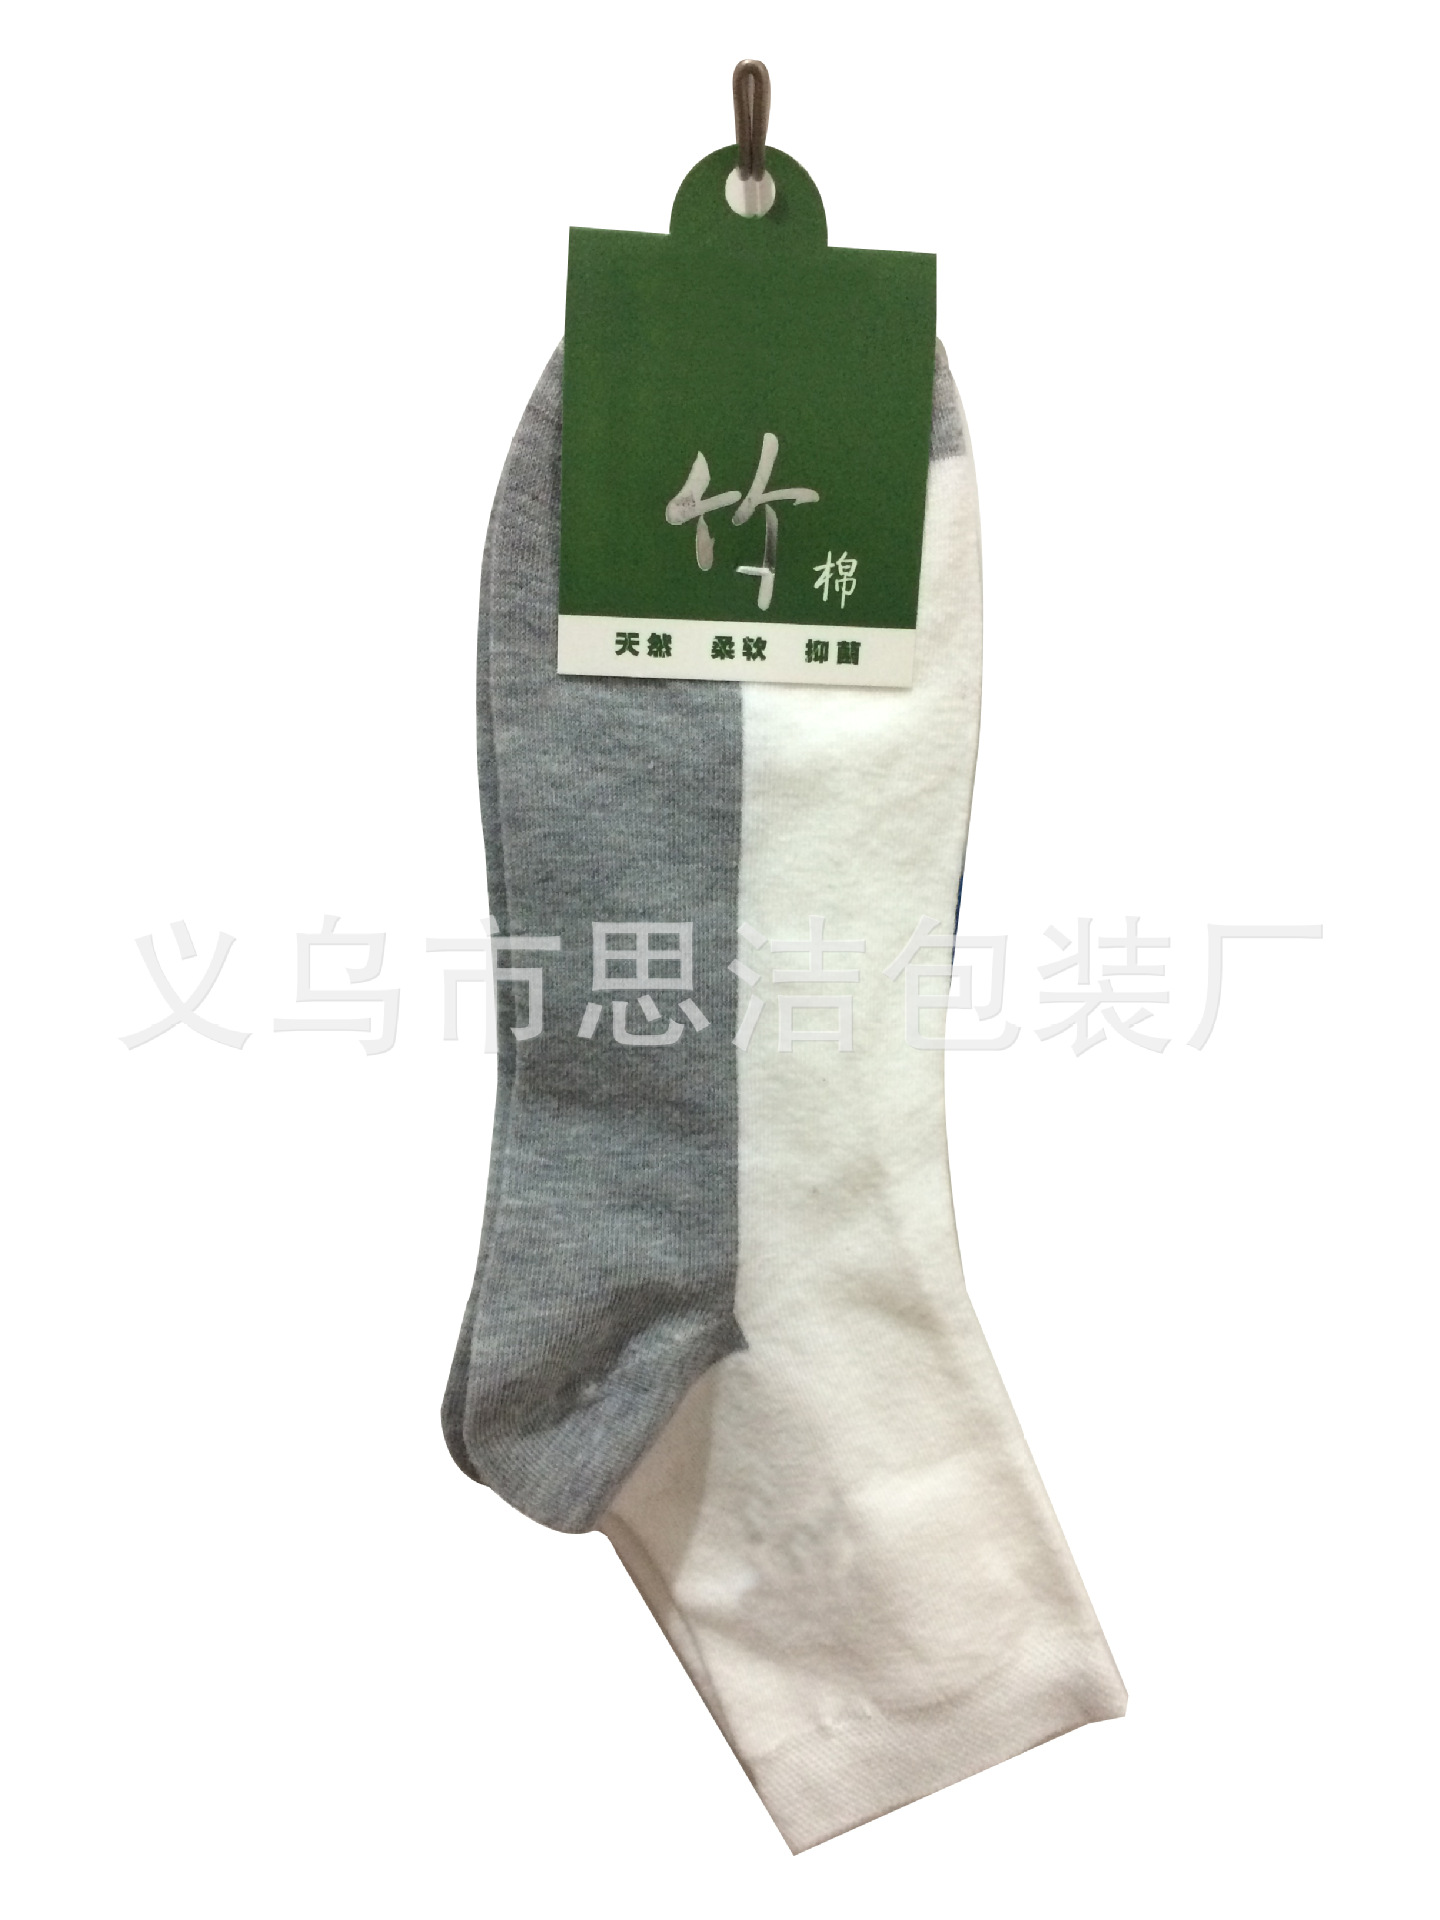 袜子标牌标签卡片定做厂家直销免费设计保暖袜竹炭竹棉袜标签量大-阿里巴巴